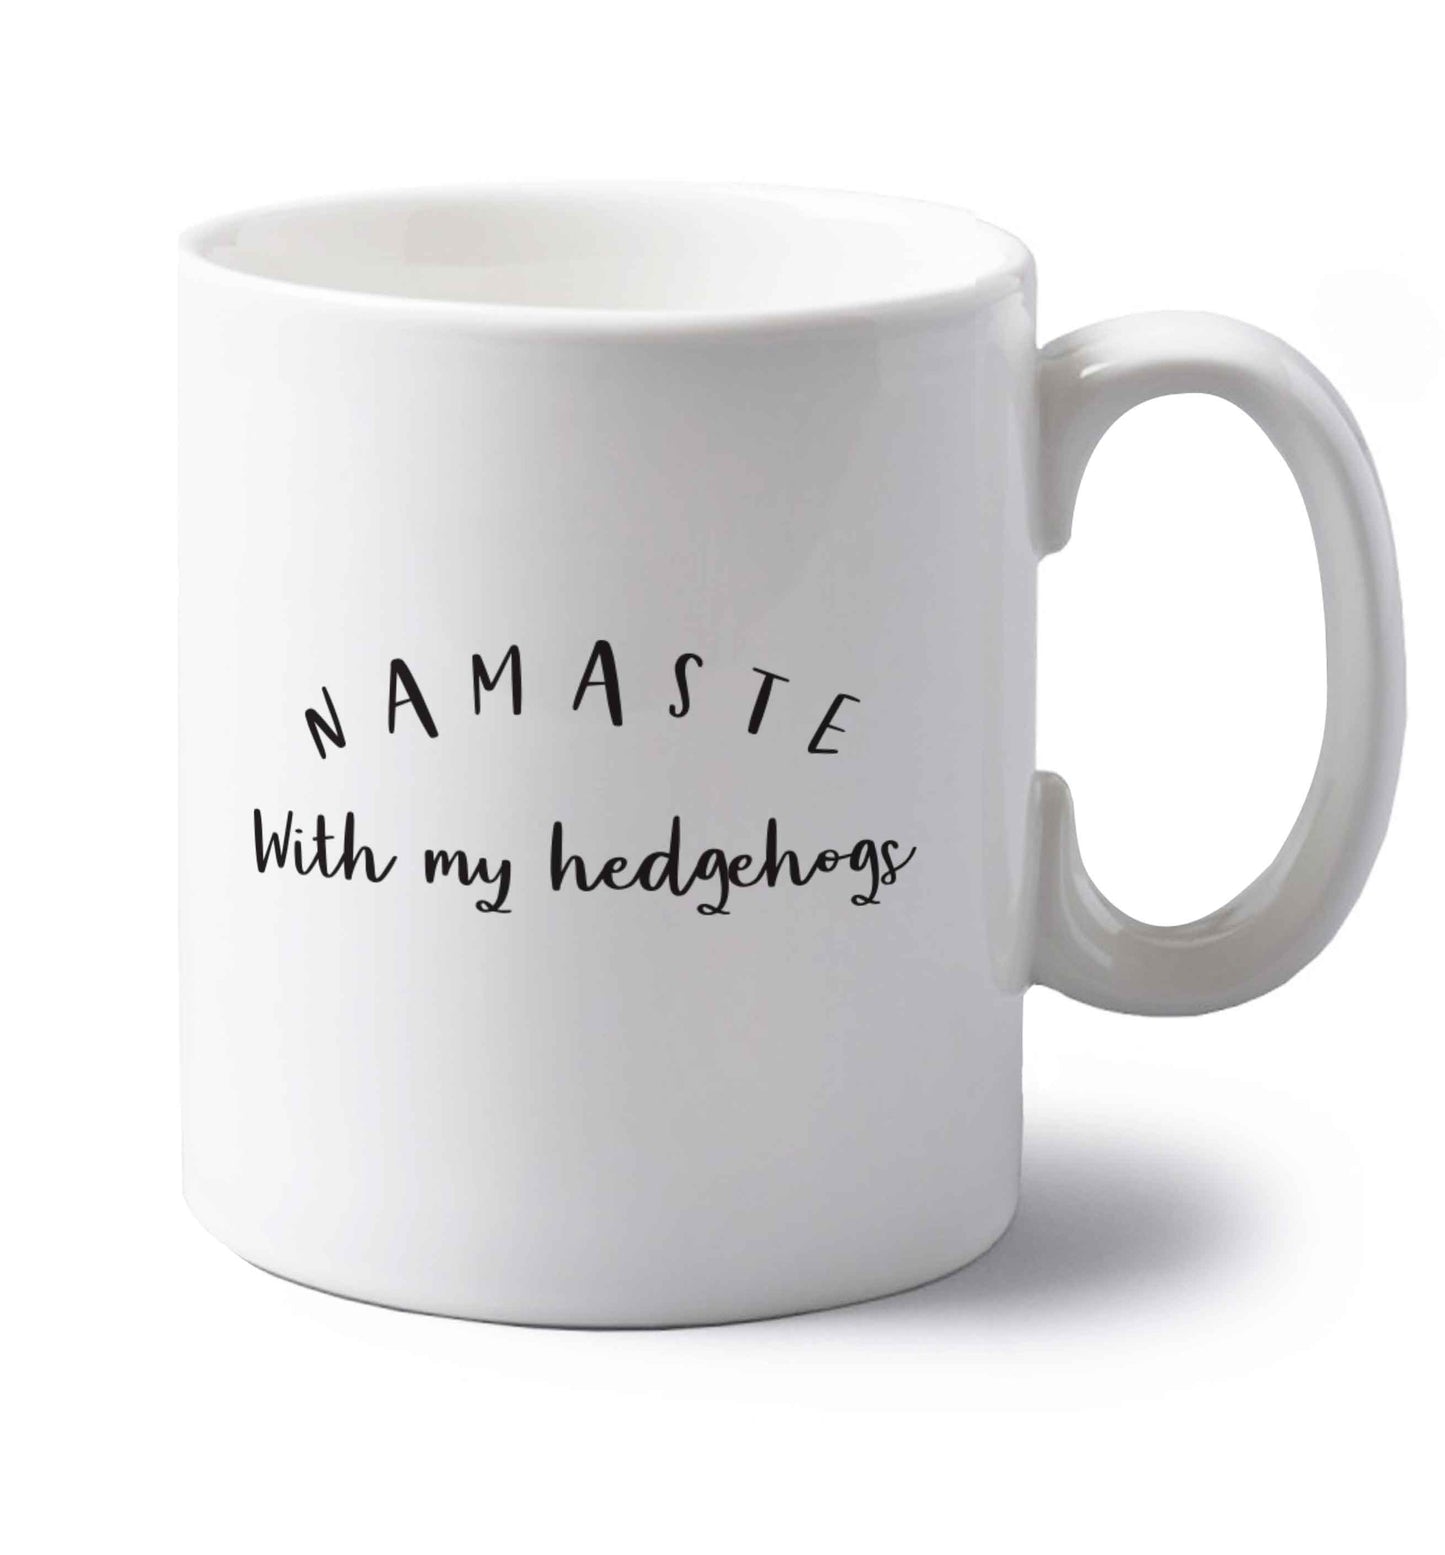 Namaste with my hedgehog left handed white ceramic mug 